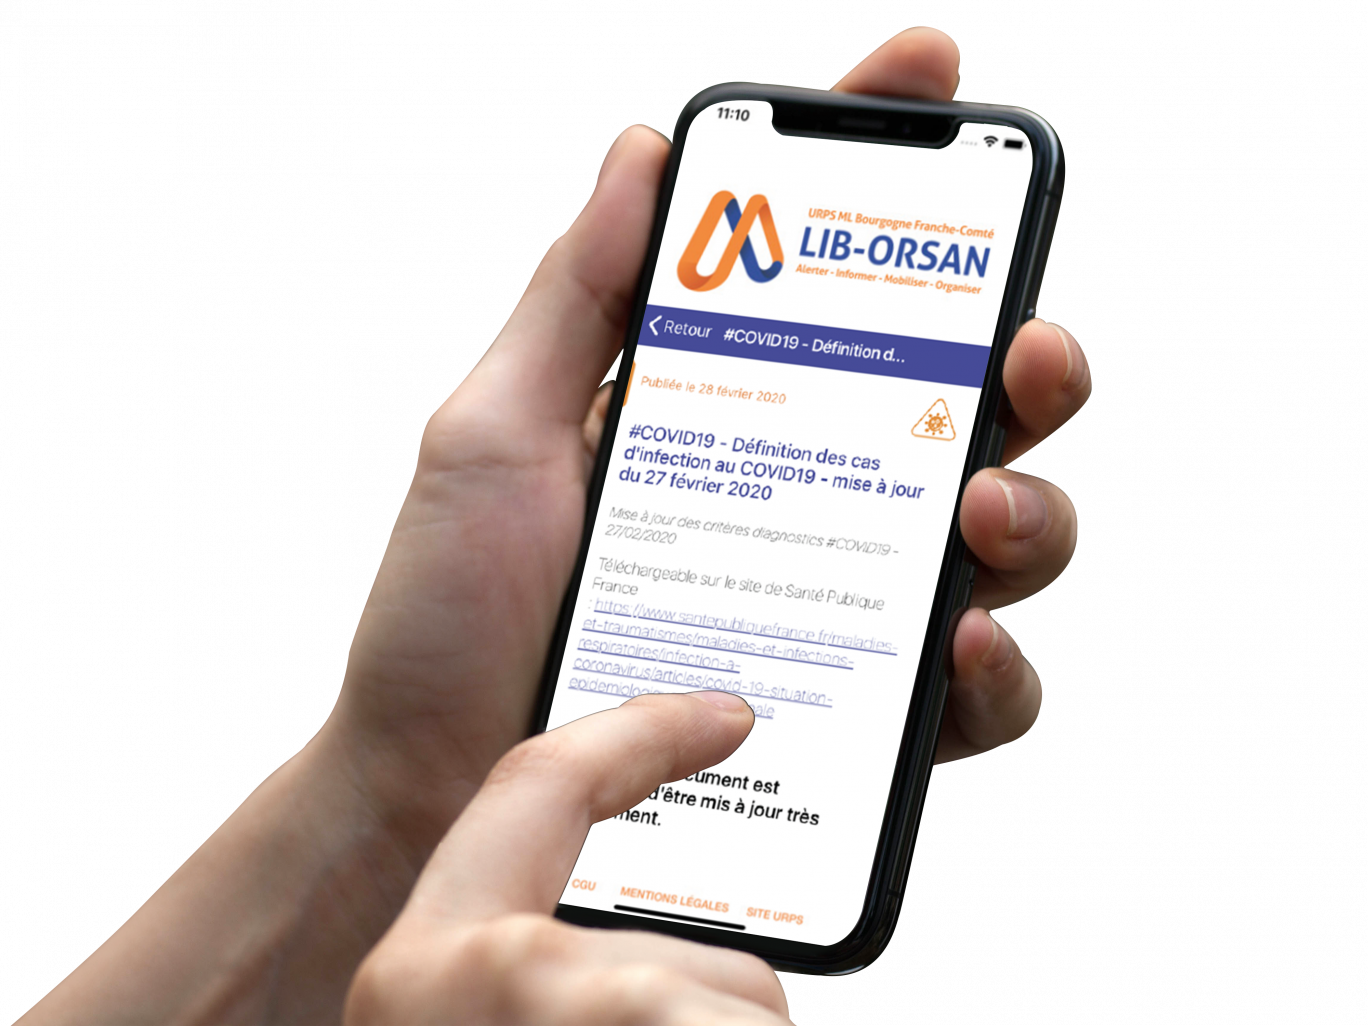 Crédit photo : URPS 
“Lib-ORSAN est accessible à tous les professionnels de santé libéraux.”